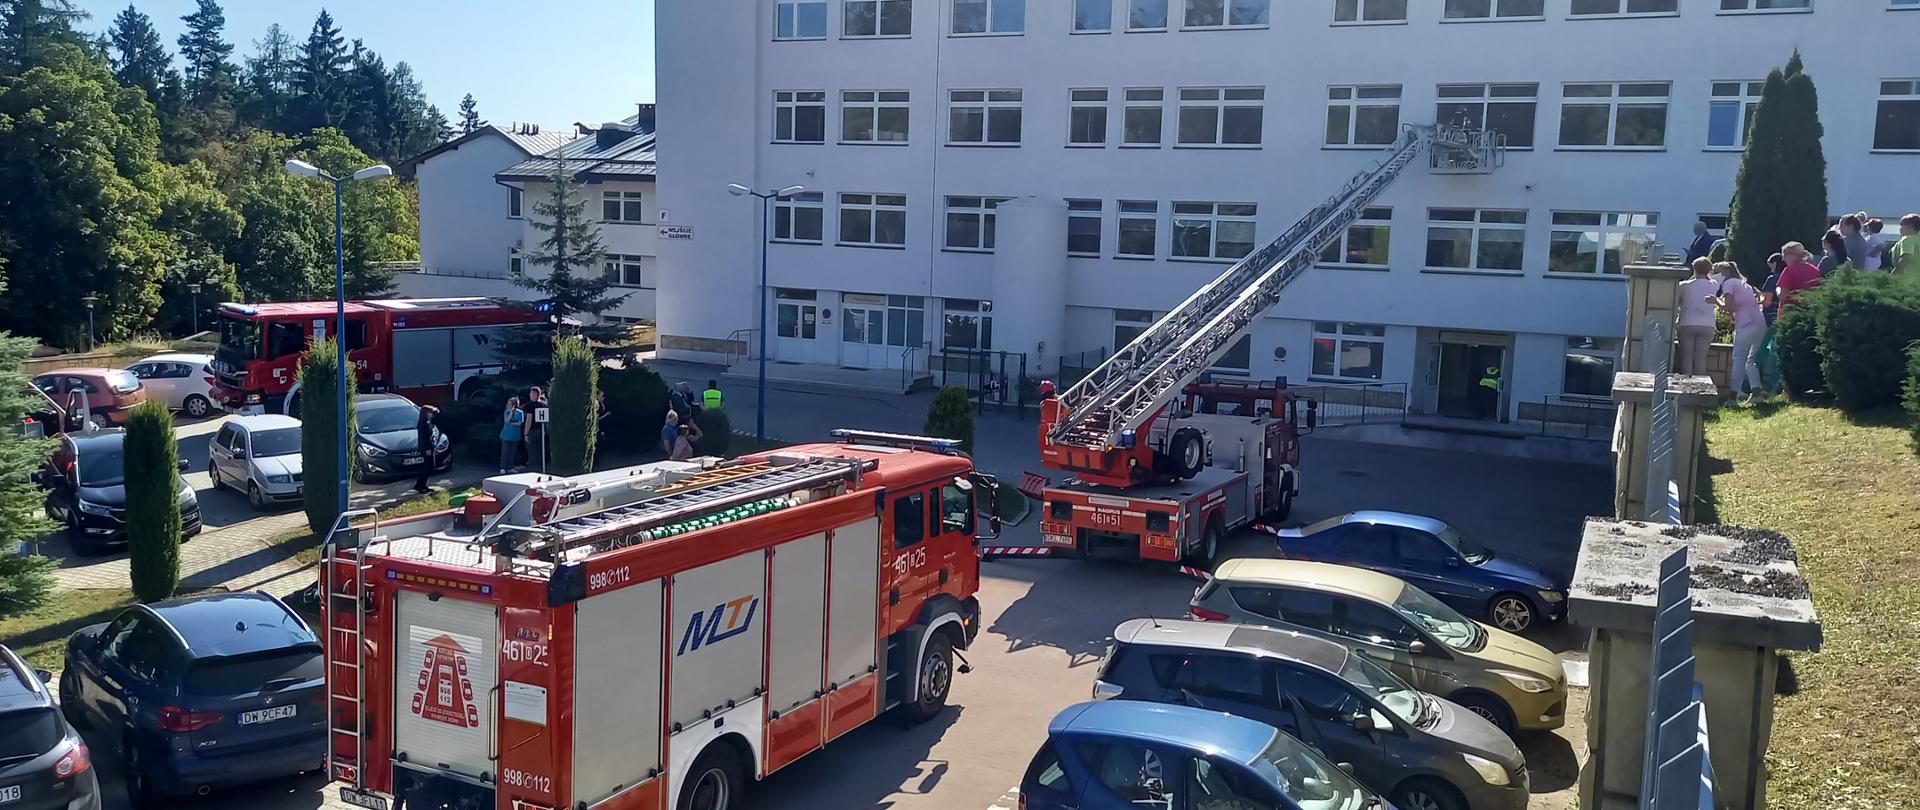 Widok na budynek szpitala. Przed nim samochód podnośnik z wysuniętym koszem, w którym znajduję się strażak prowadzący ewakuację przez okno.